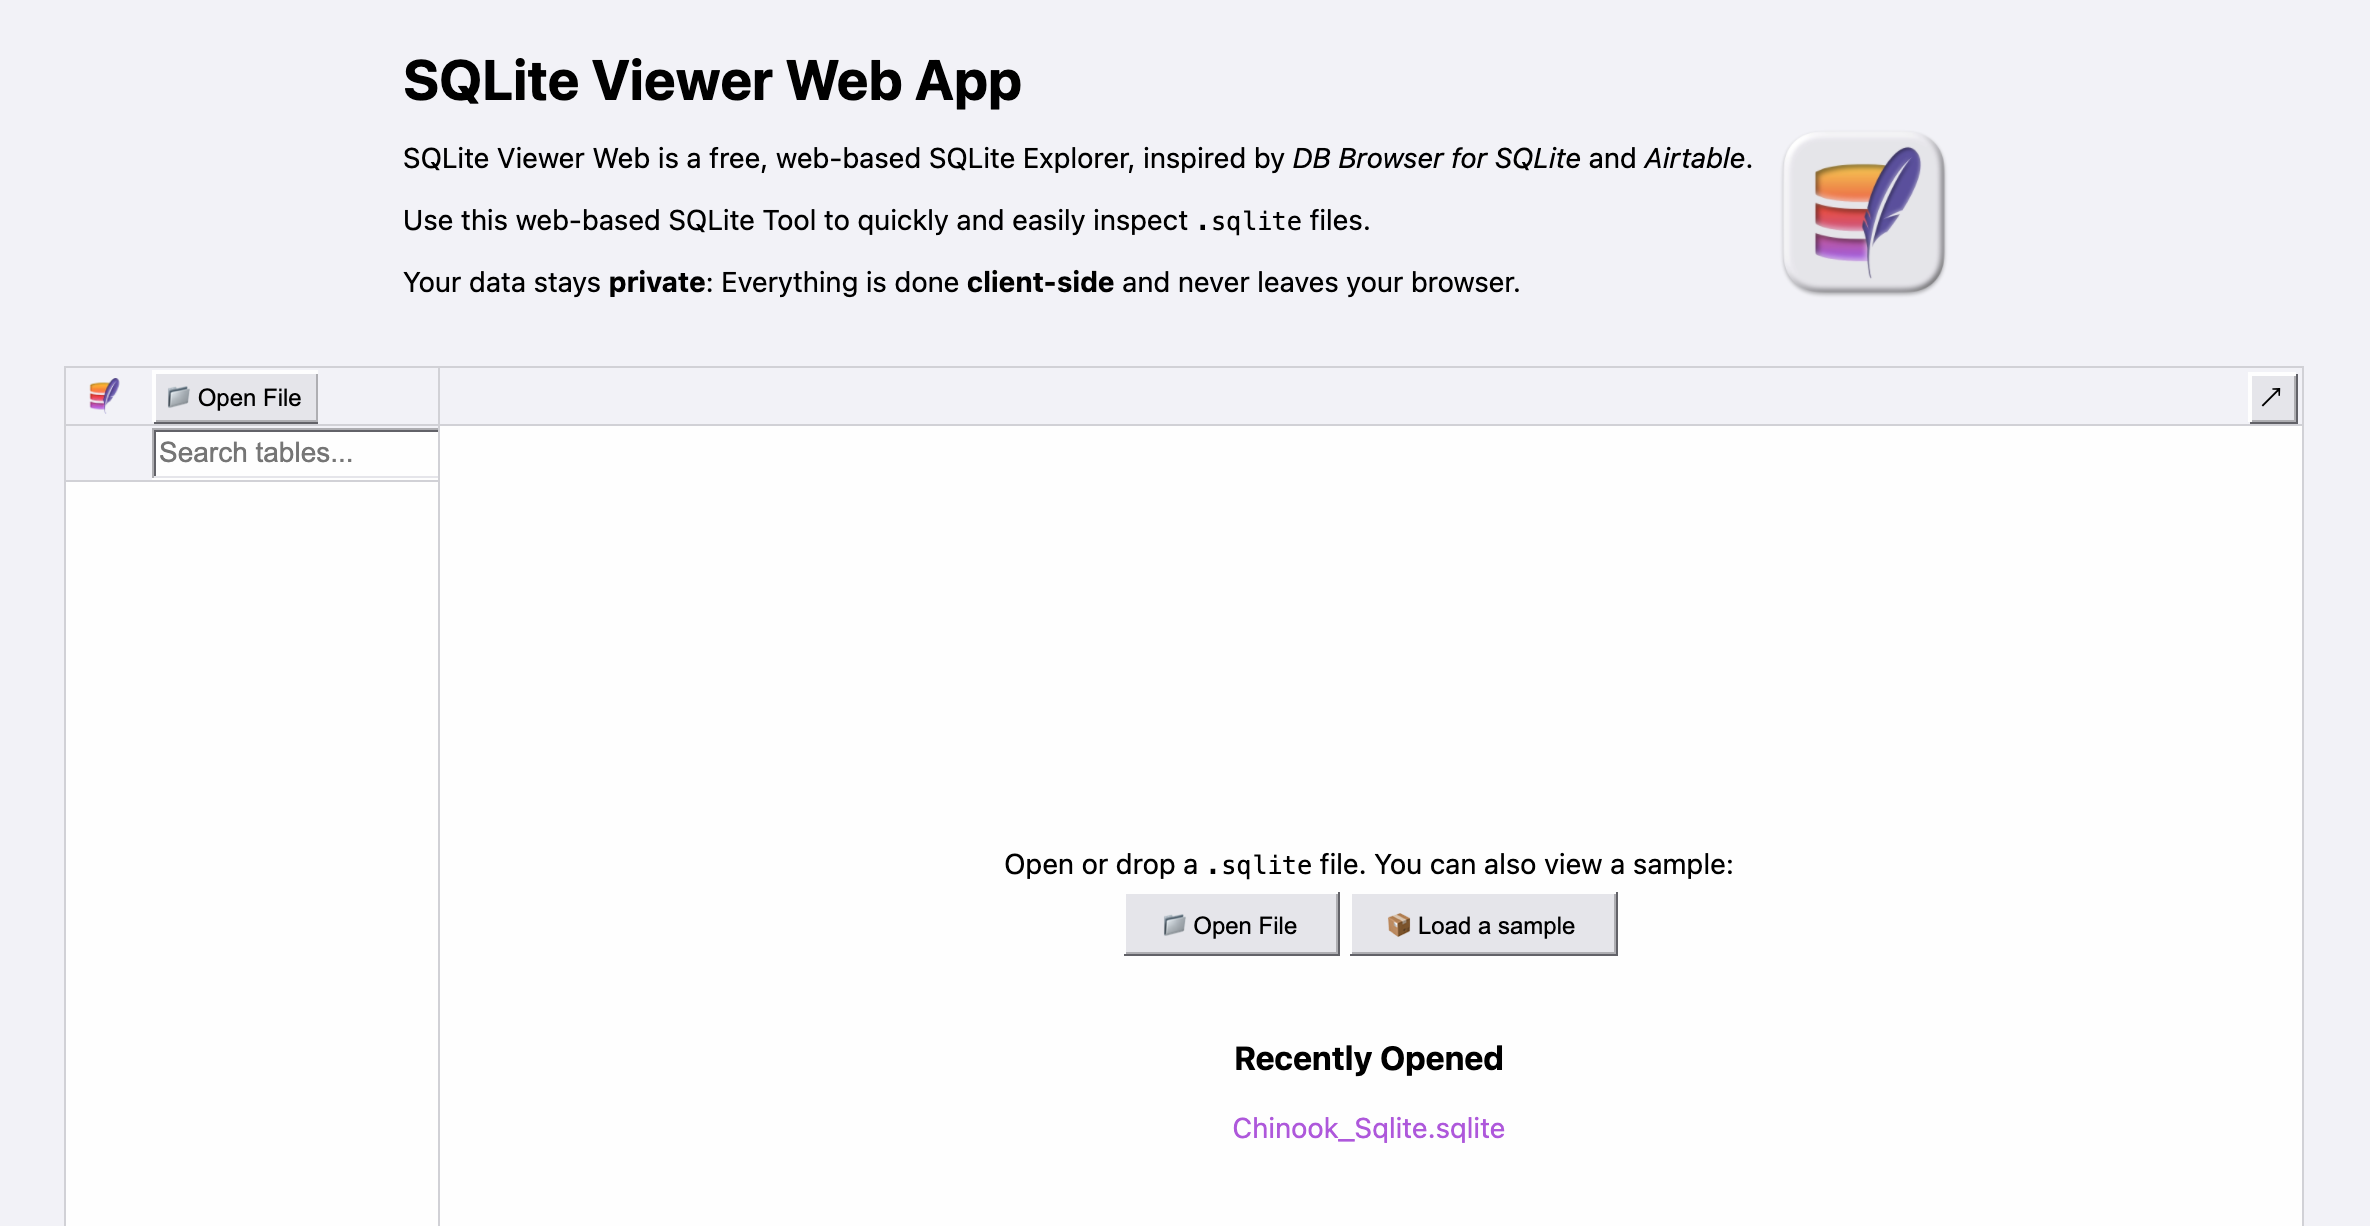 SQLite Viewer Web App